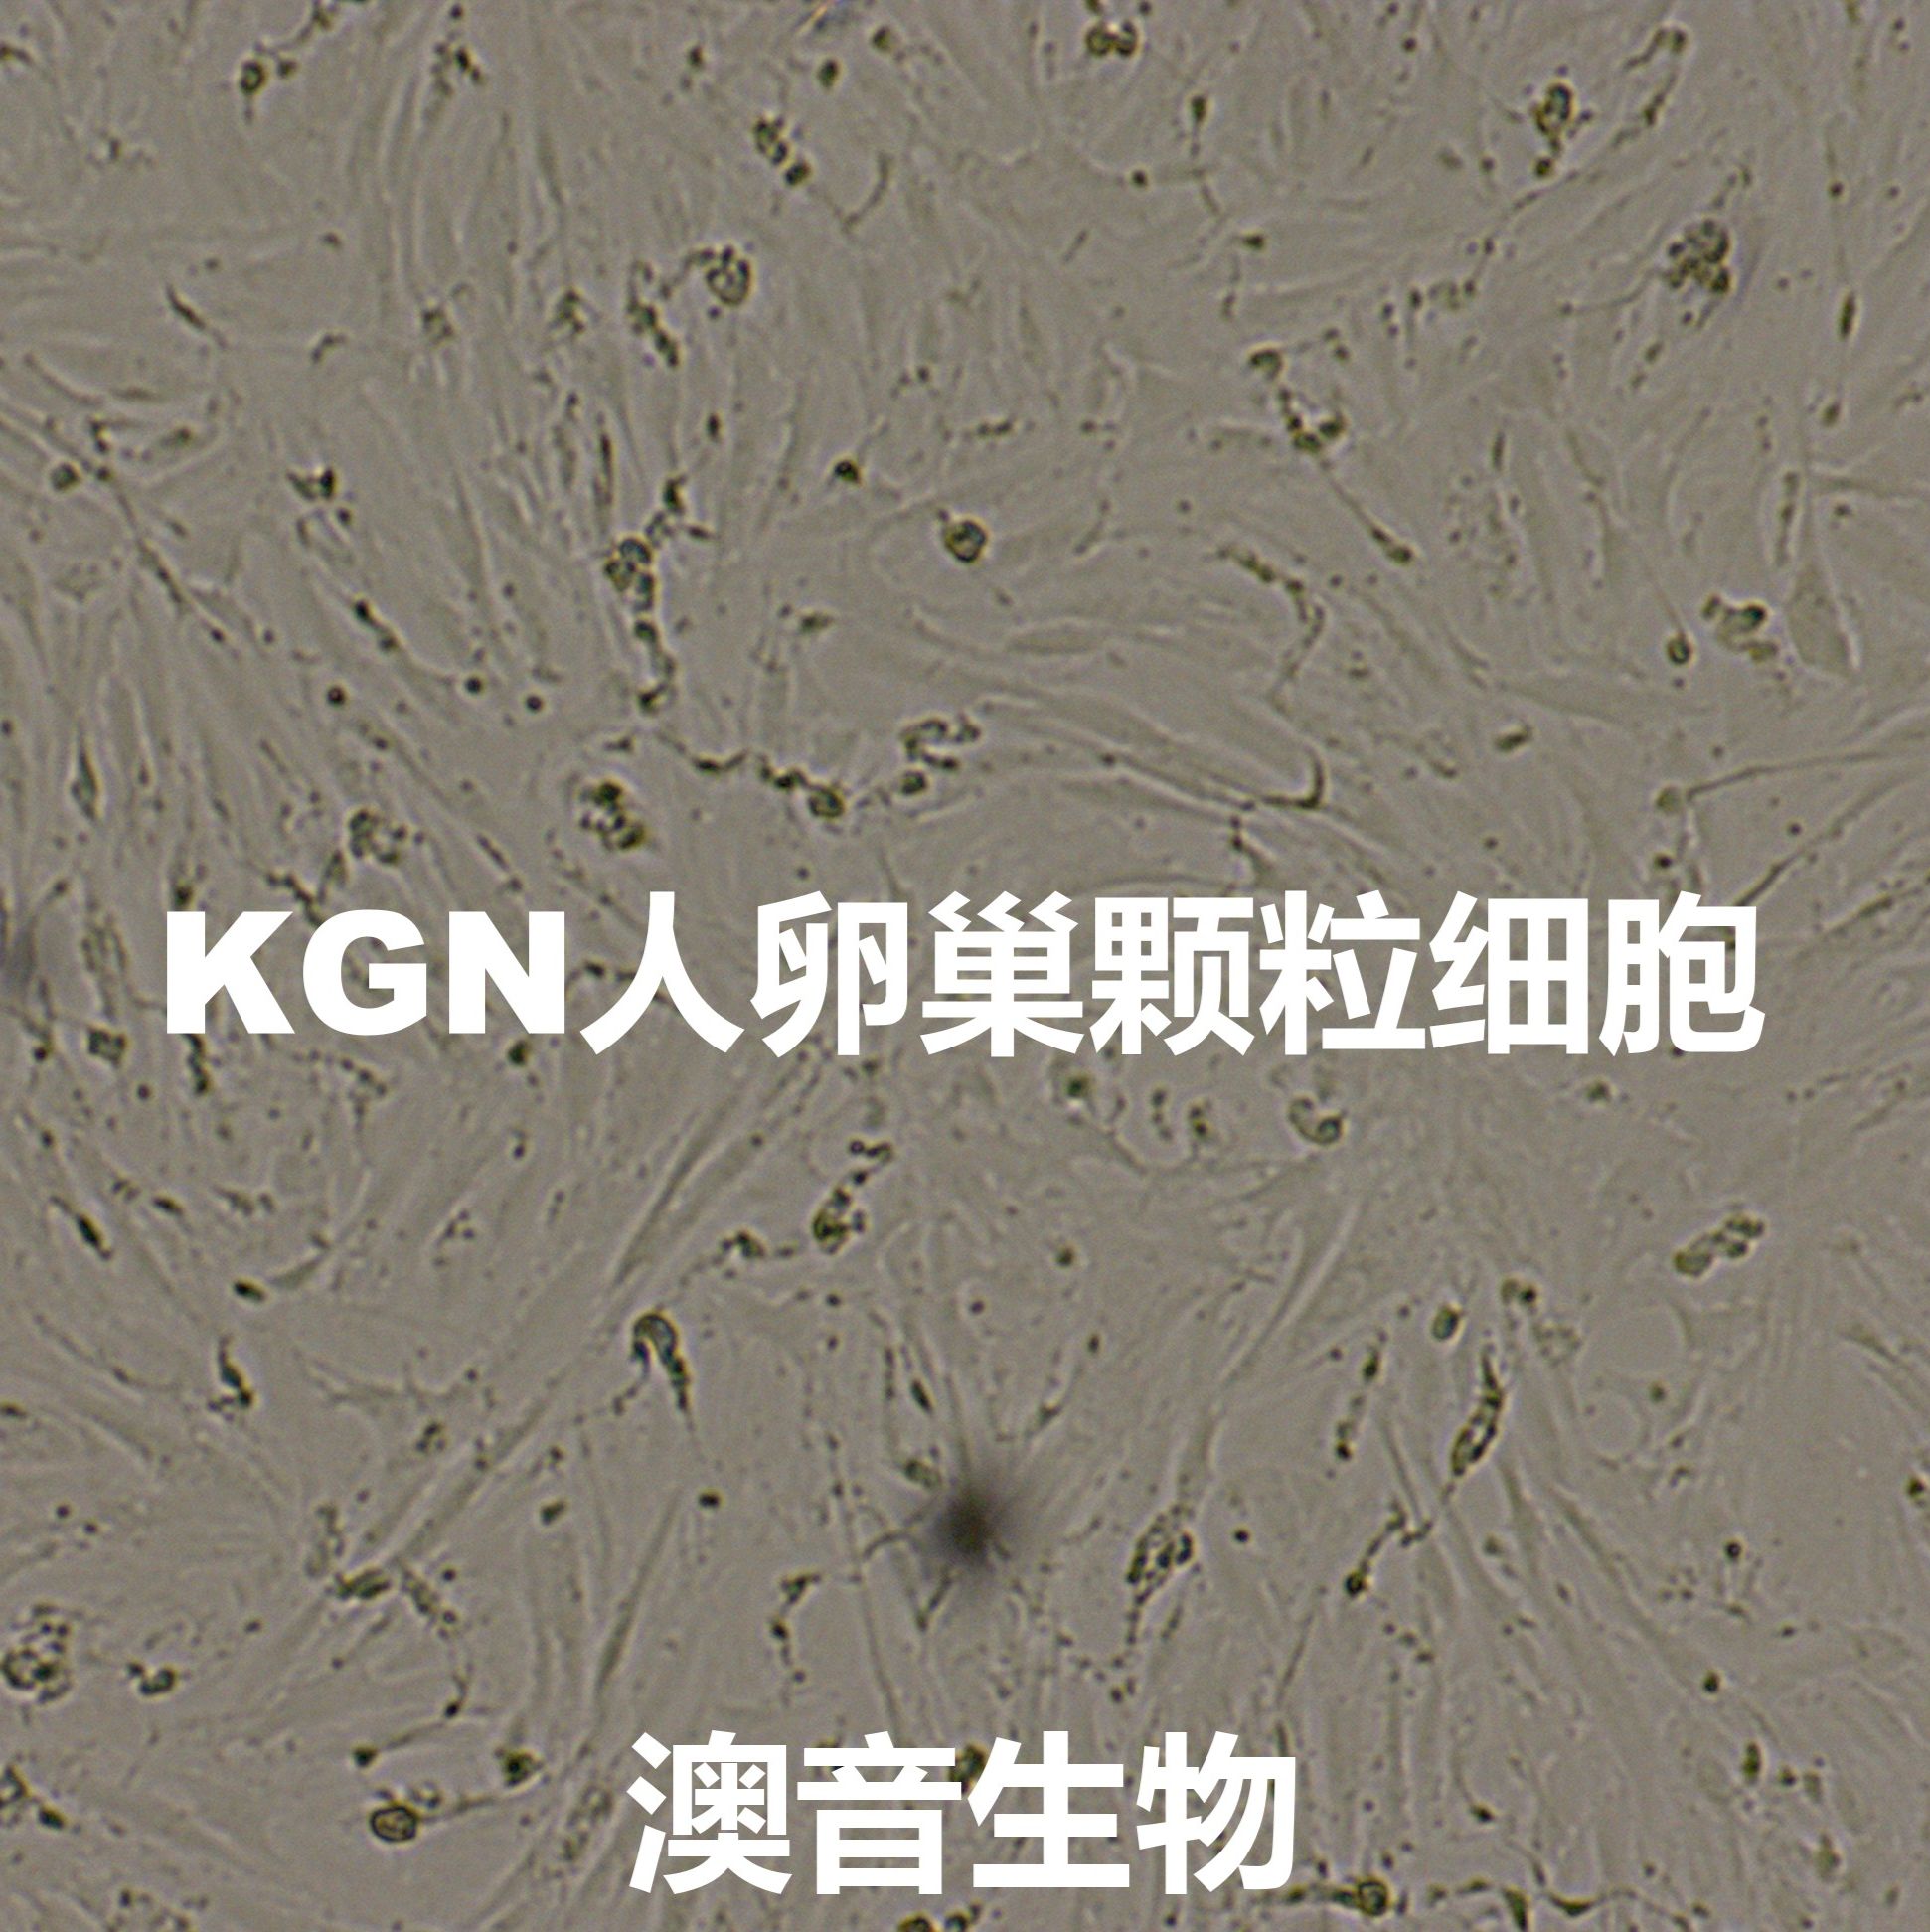 KGN【kgn;Kgn】卵巢颗粒细胞